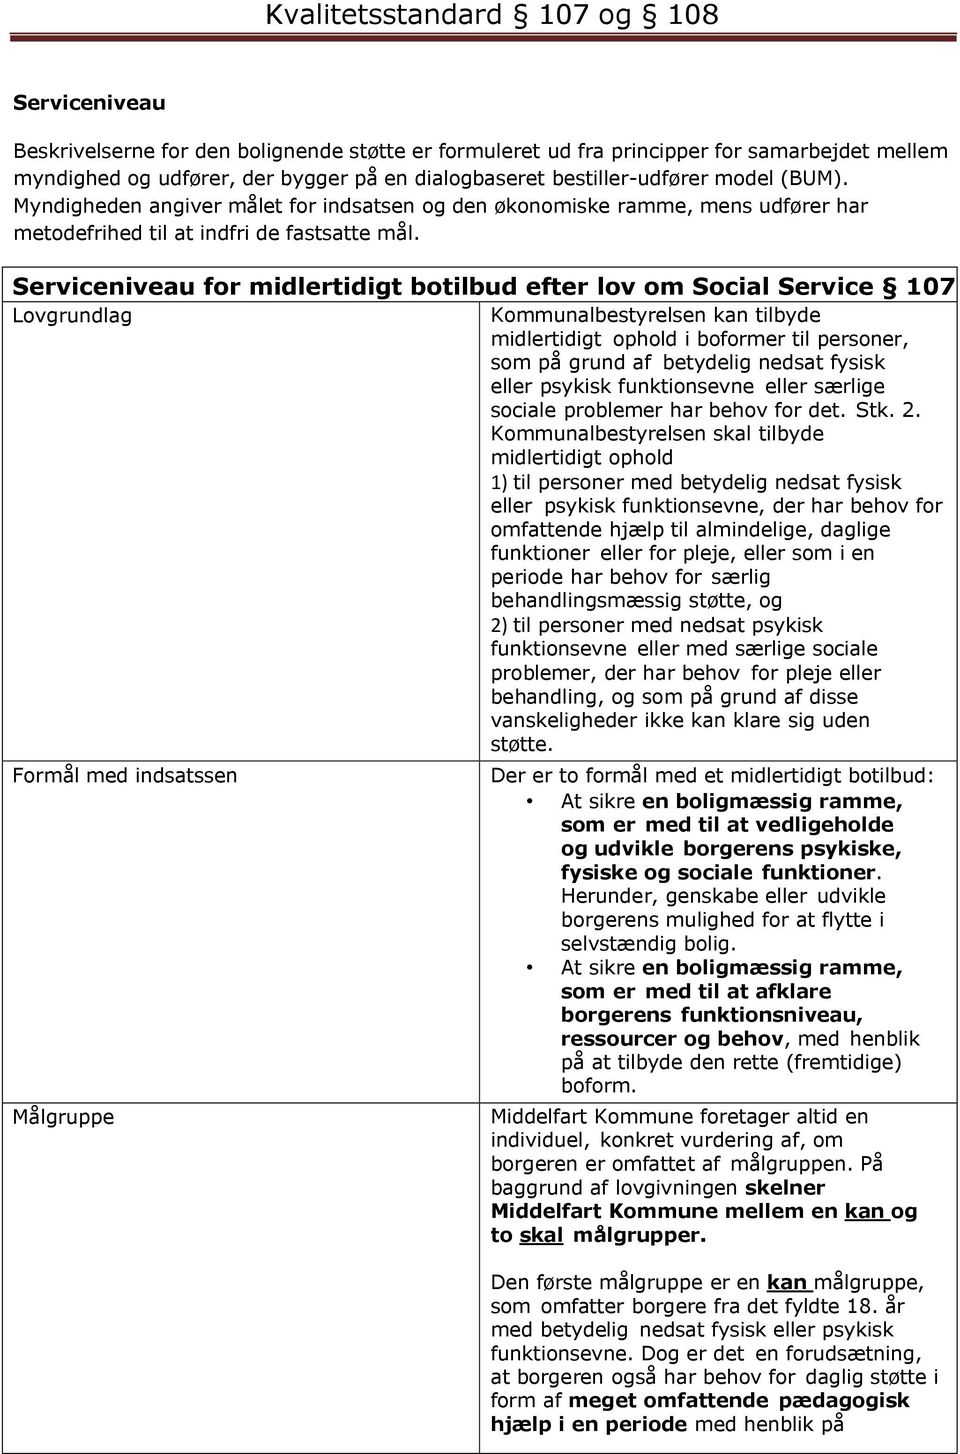 Serviceniveau for midlertidigt botilbud efter lov om Social Service 107 Lovgrundlag Kommunalbestyrelsen kan tilbyde midlertidigt ophold i boformer til personer, som på grund af betydelig nedsat